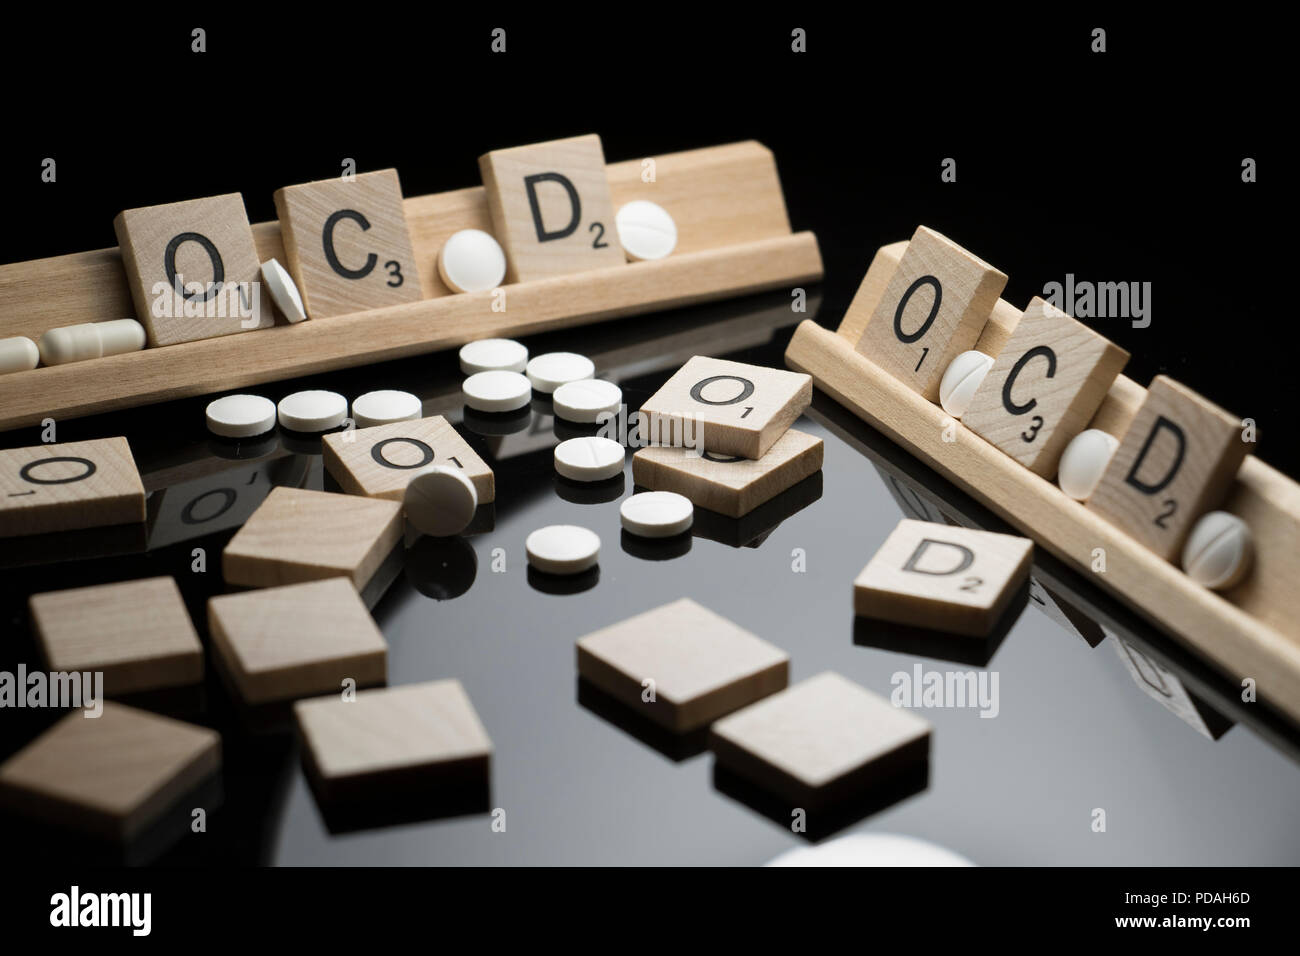 Concetto di OCD scritto nel testo di Scrabble con farmaci farmaceutici su una tavola nera. Disturbo ossessivo compulsivo e comportamento Foto Stock